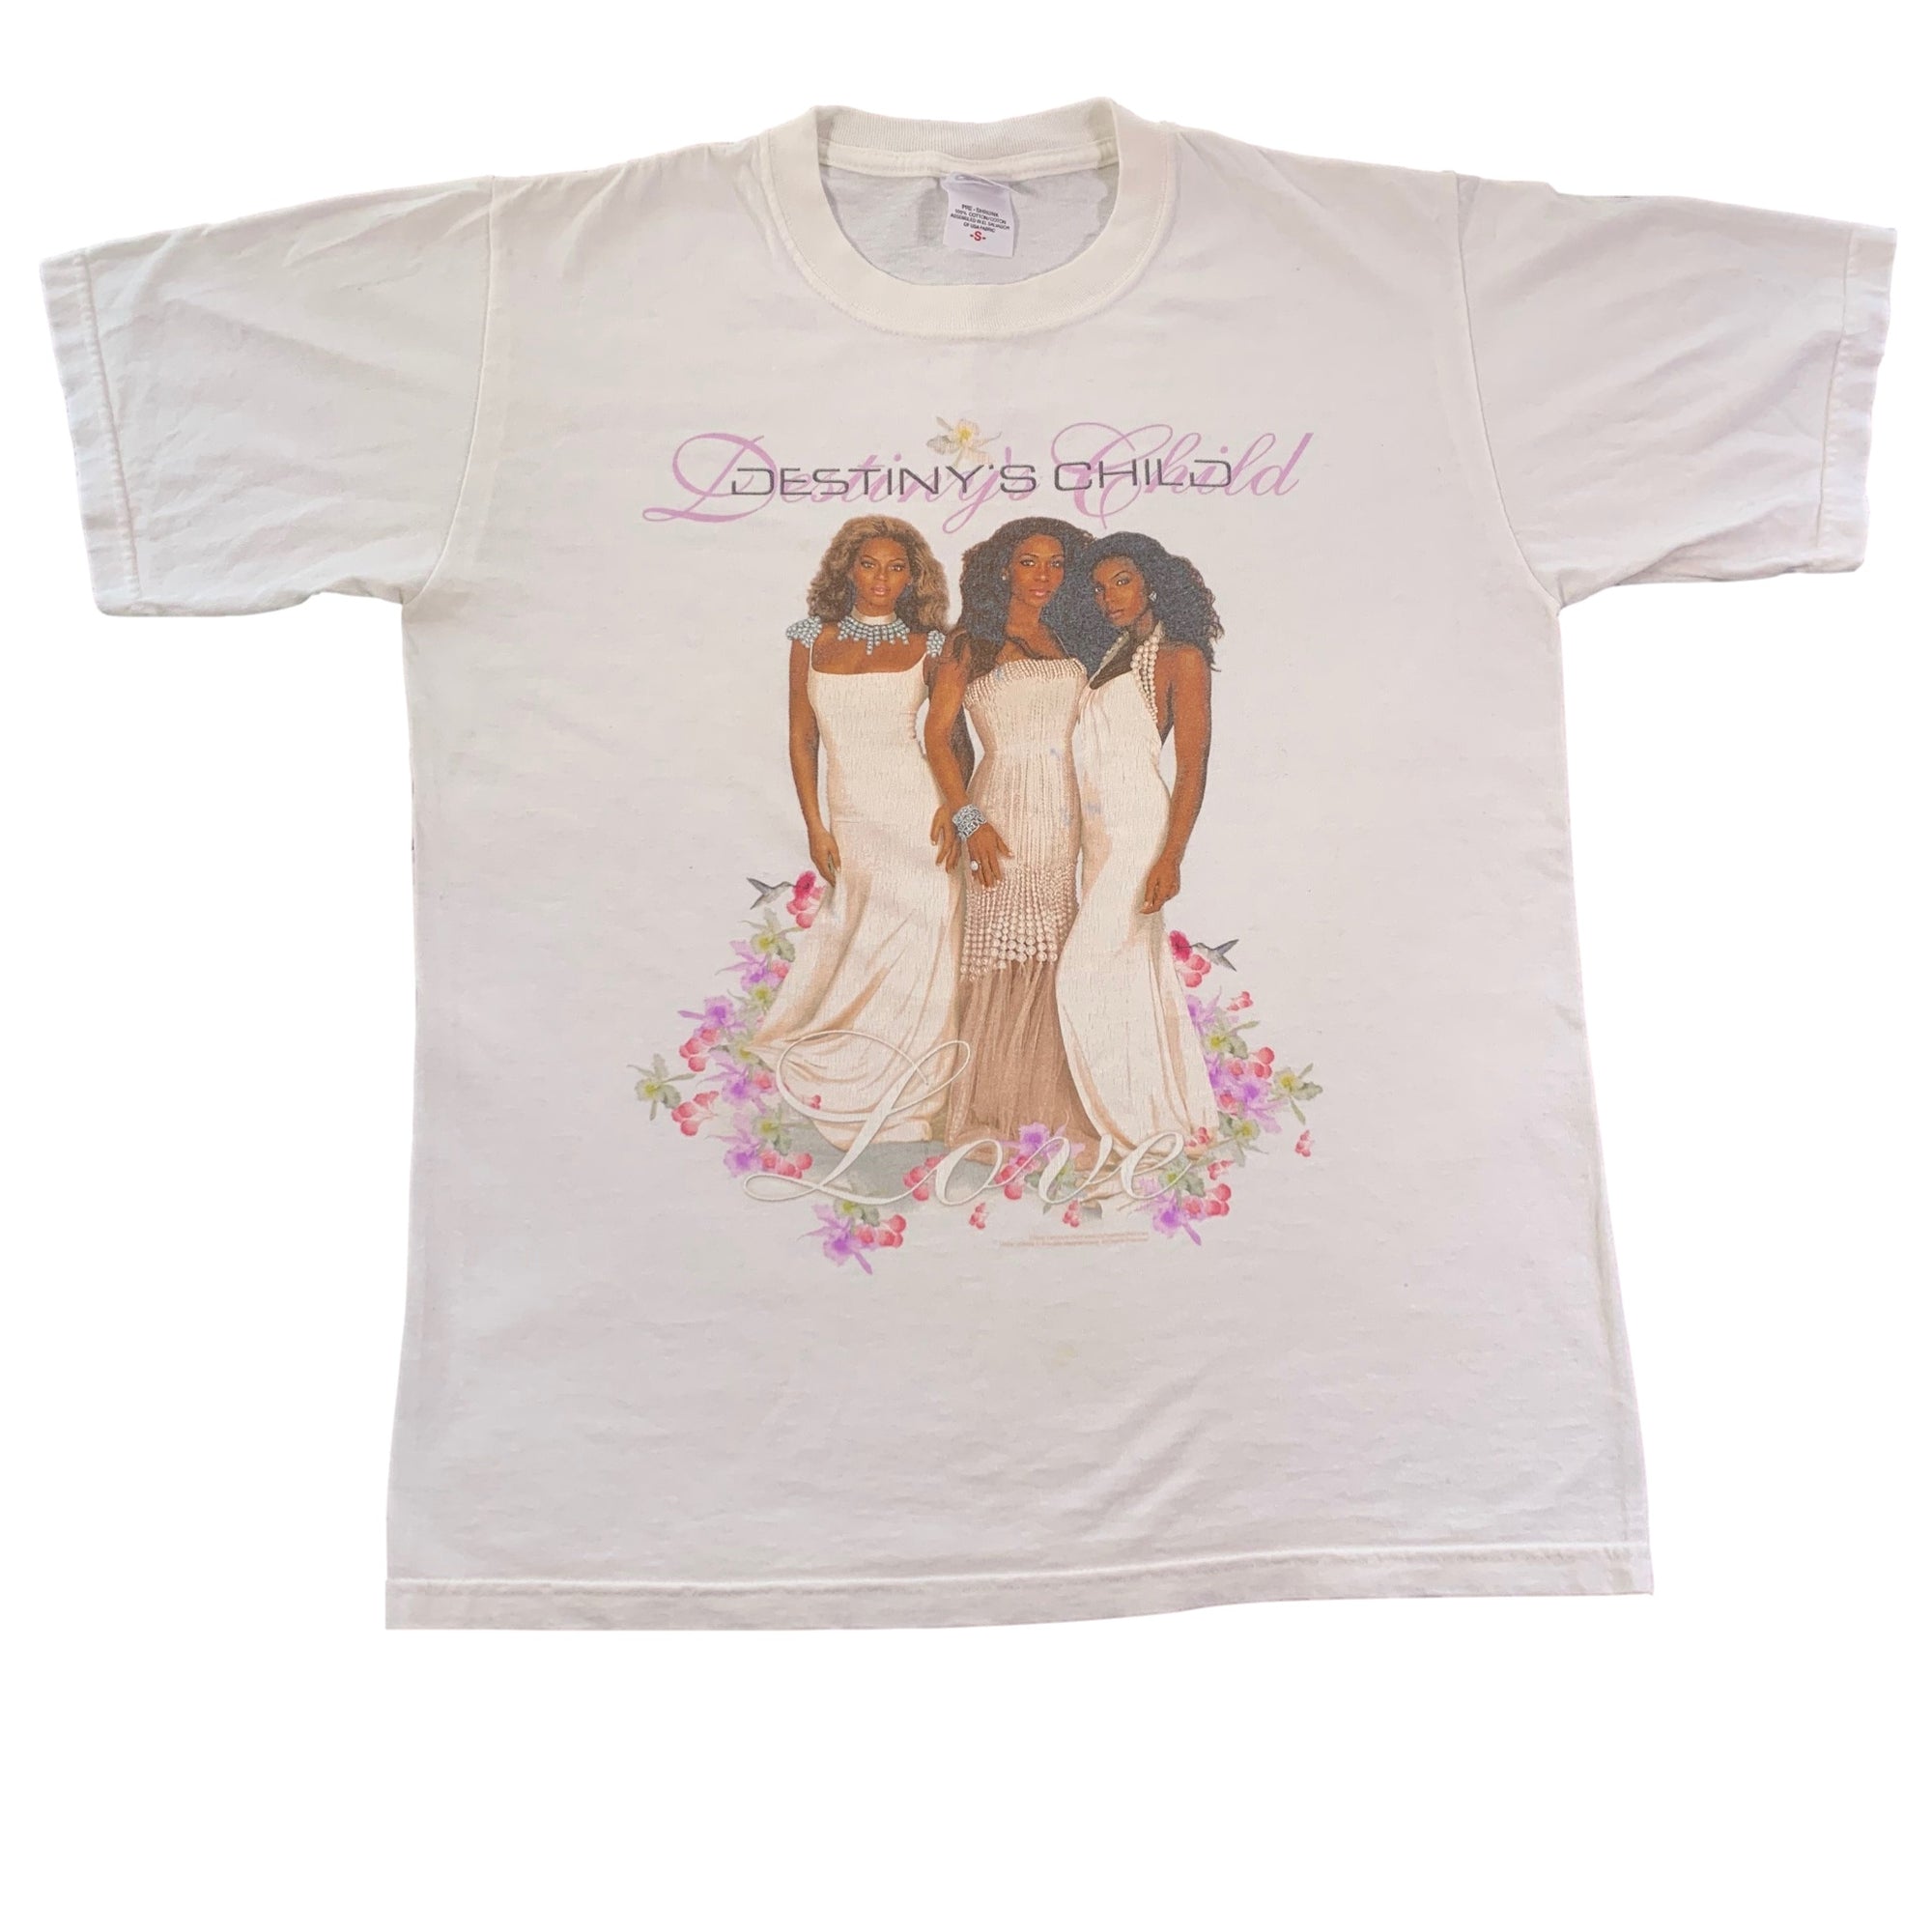 Vintage Destiny's Child "Love" T-Shirt - jointcustodydc